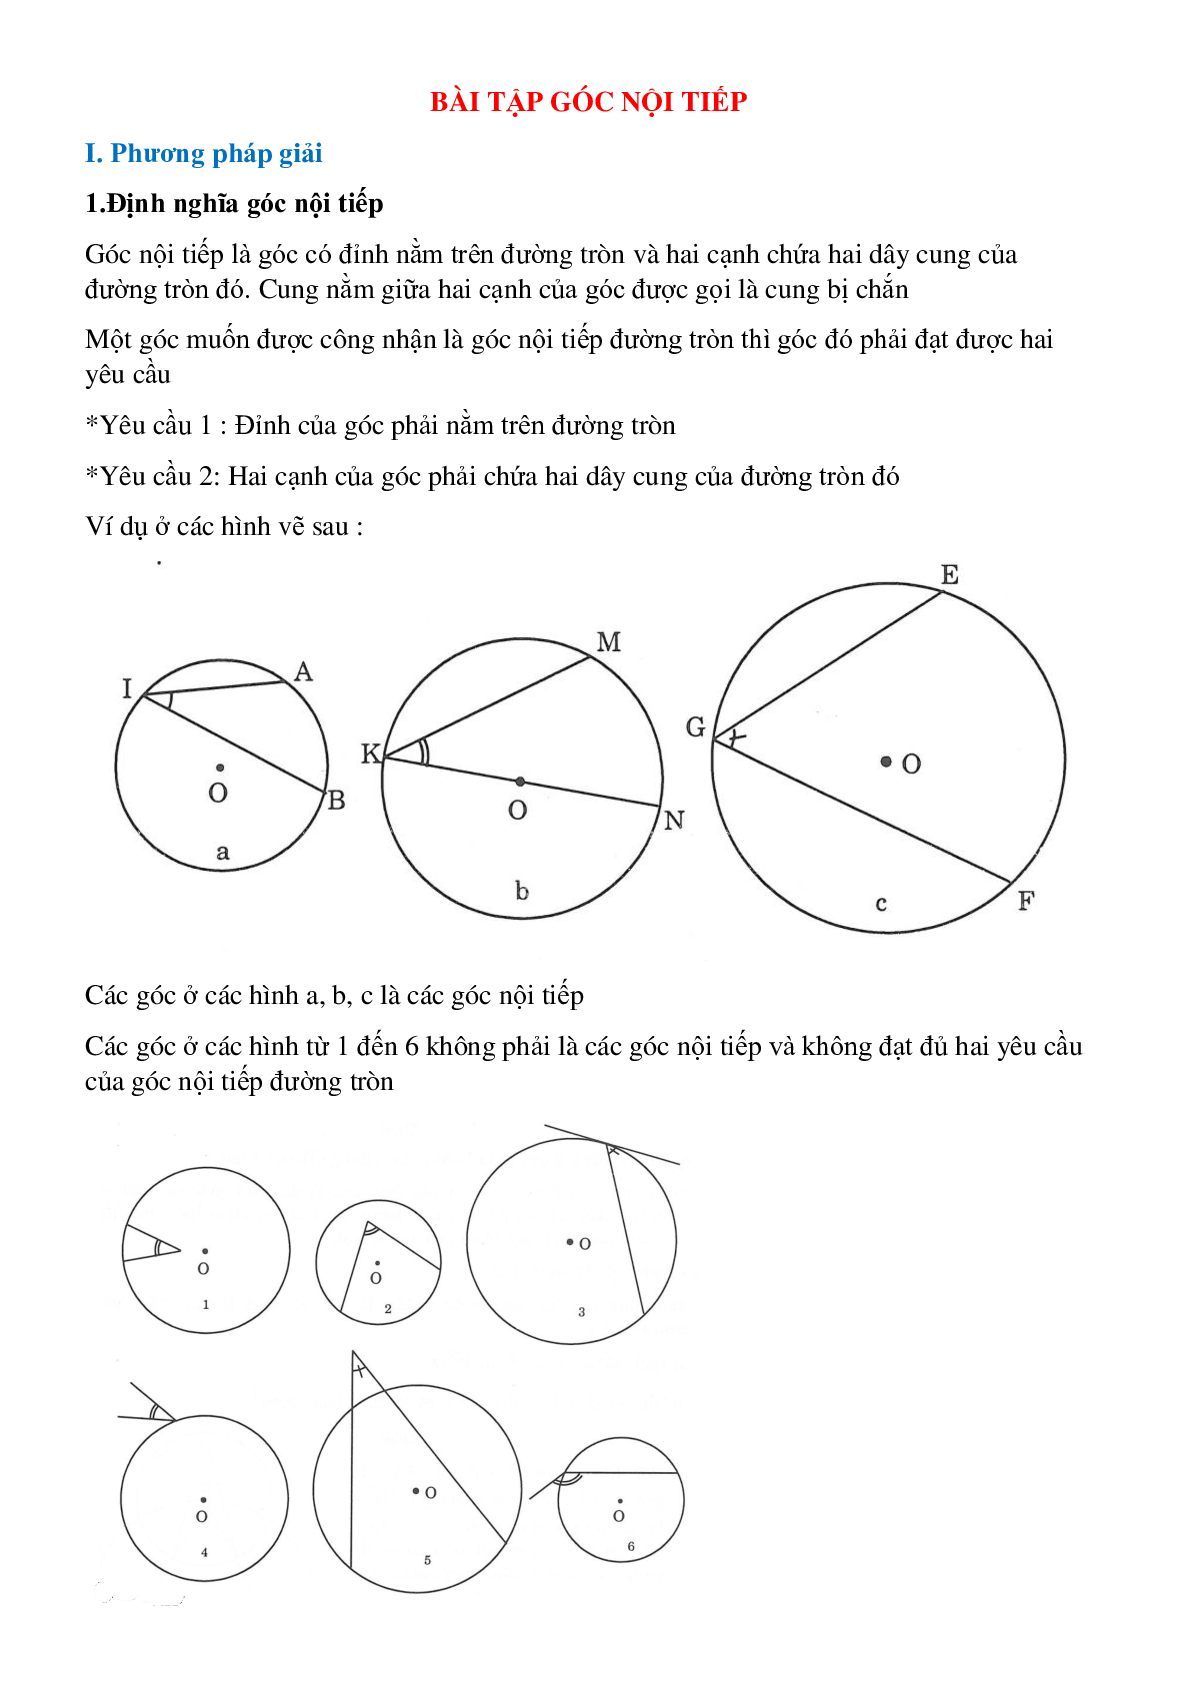 Lý thuyết, bài tập về Góc nội tiếp hình học toán 9 đầy đủ, có lời giải (trang 1)